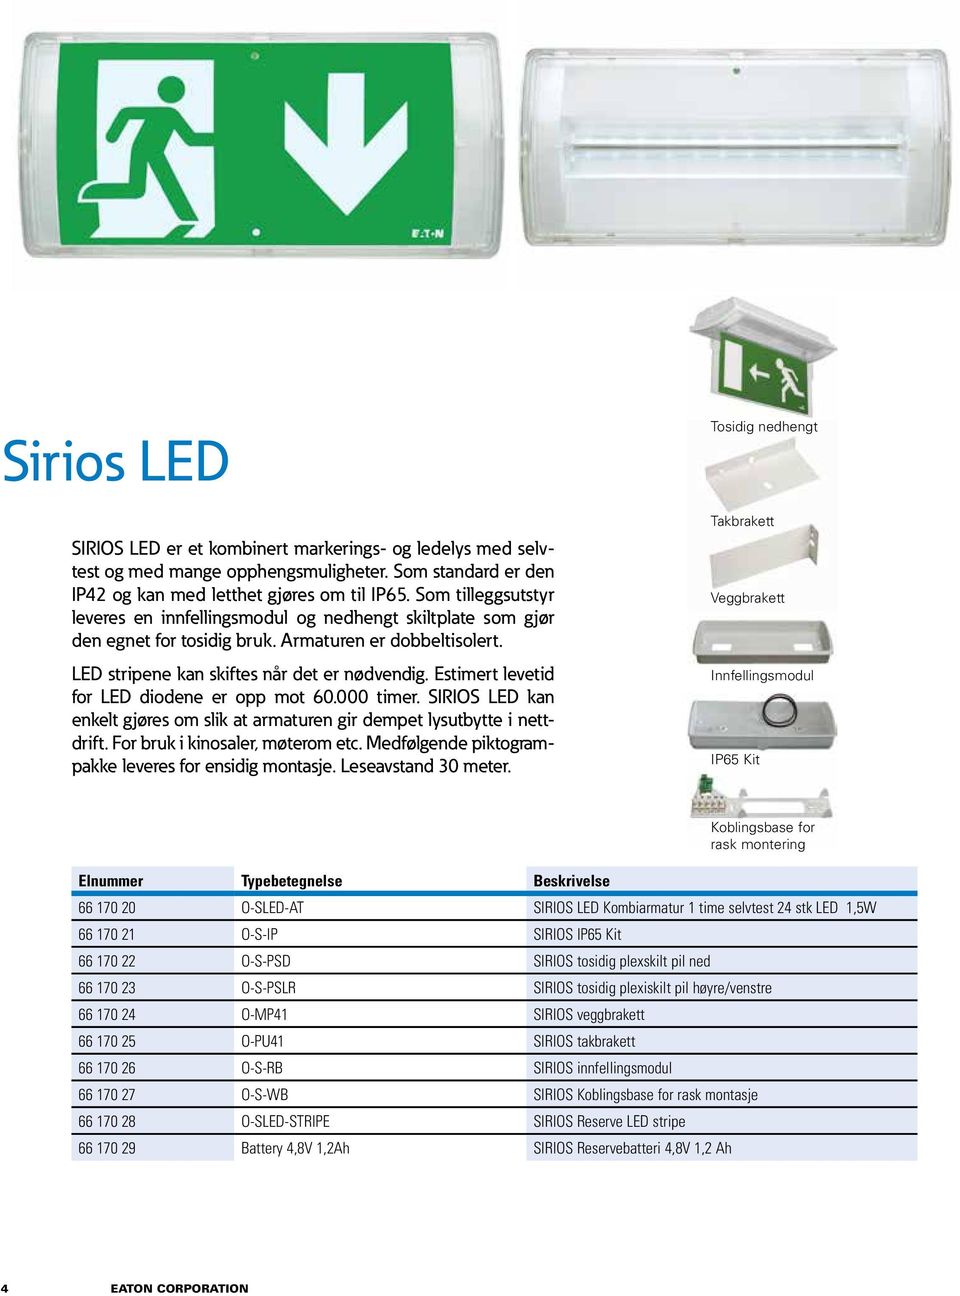 Estimert levetid for LED diodene er opp mot 60.000 timer. SIRIOS LED kan enkelt gjøres om slik at armaturen gir dempet lysutbytte i nettdrift. For bruk i kinosaler, møterom etc.